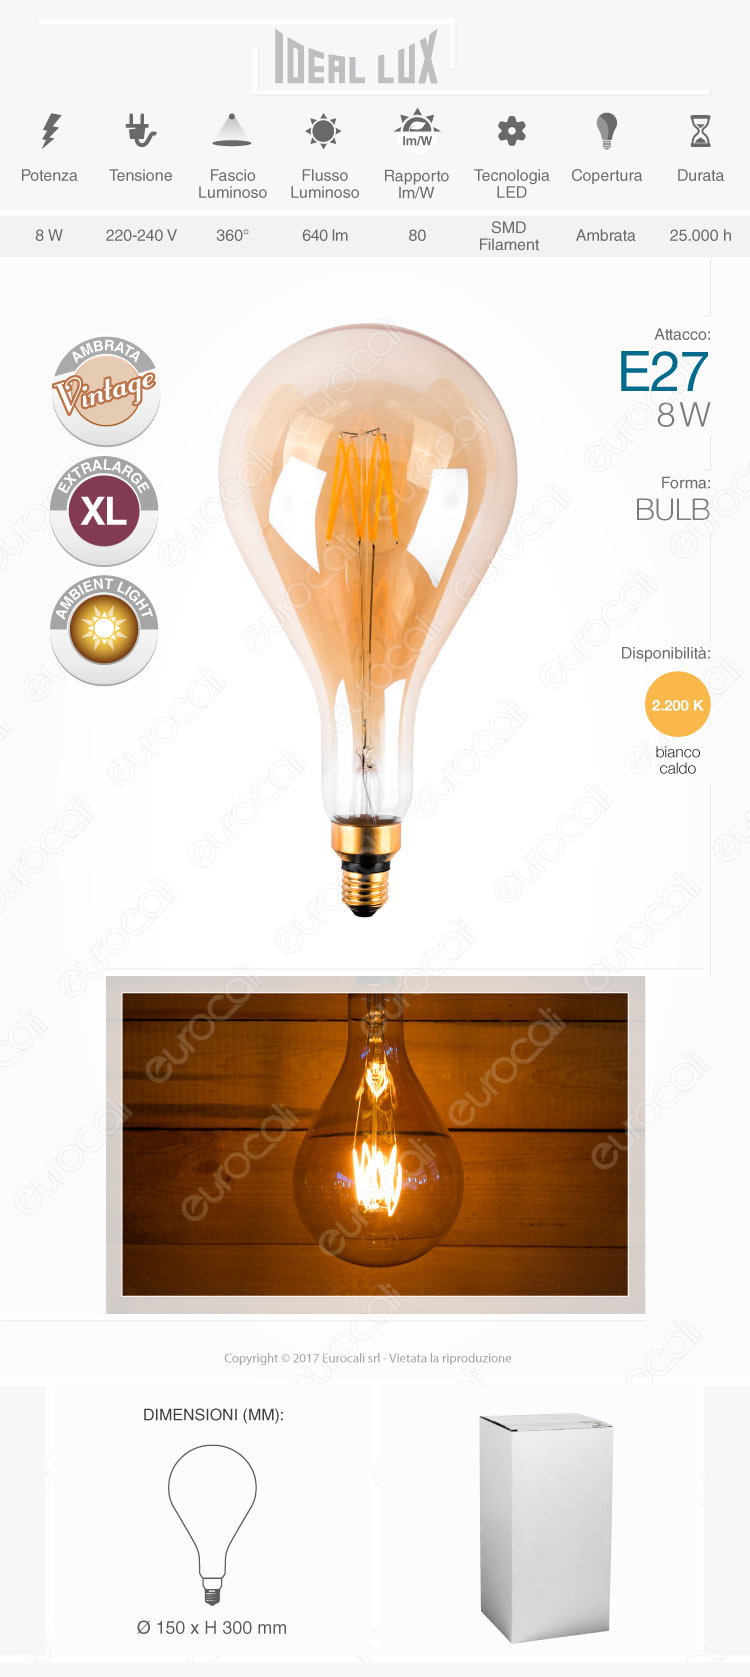 lampada led e27 ideal lux